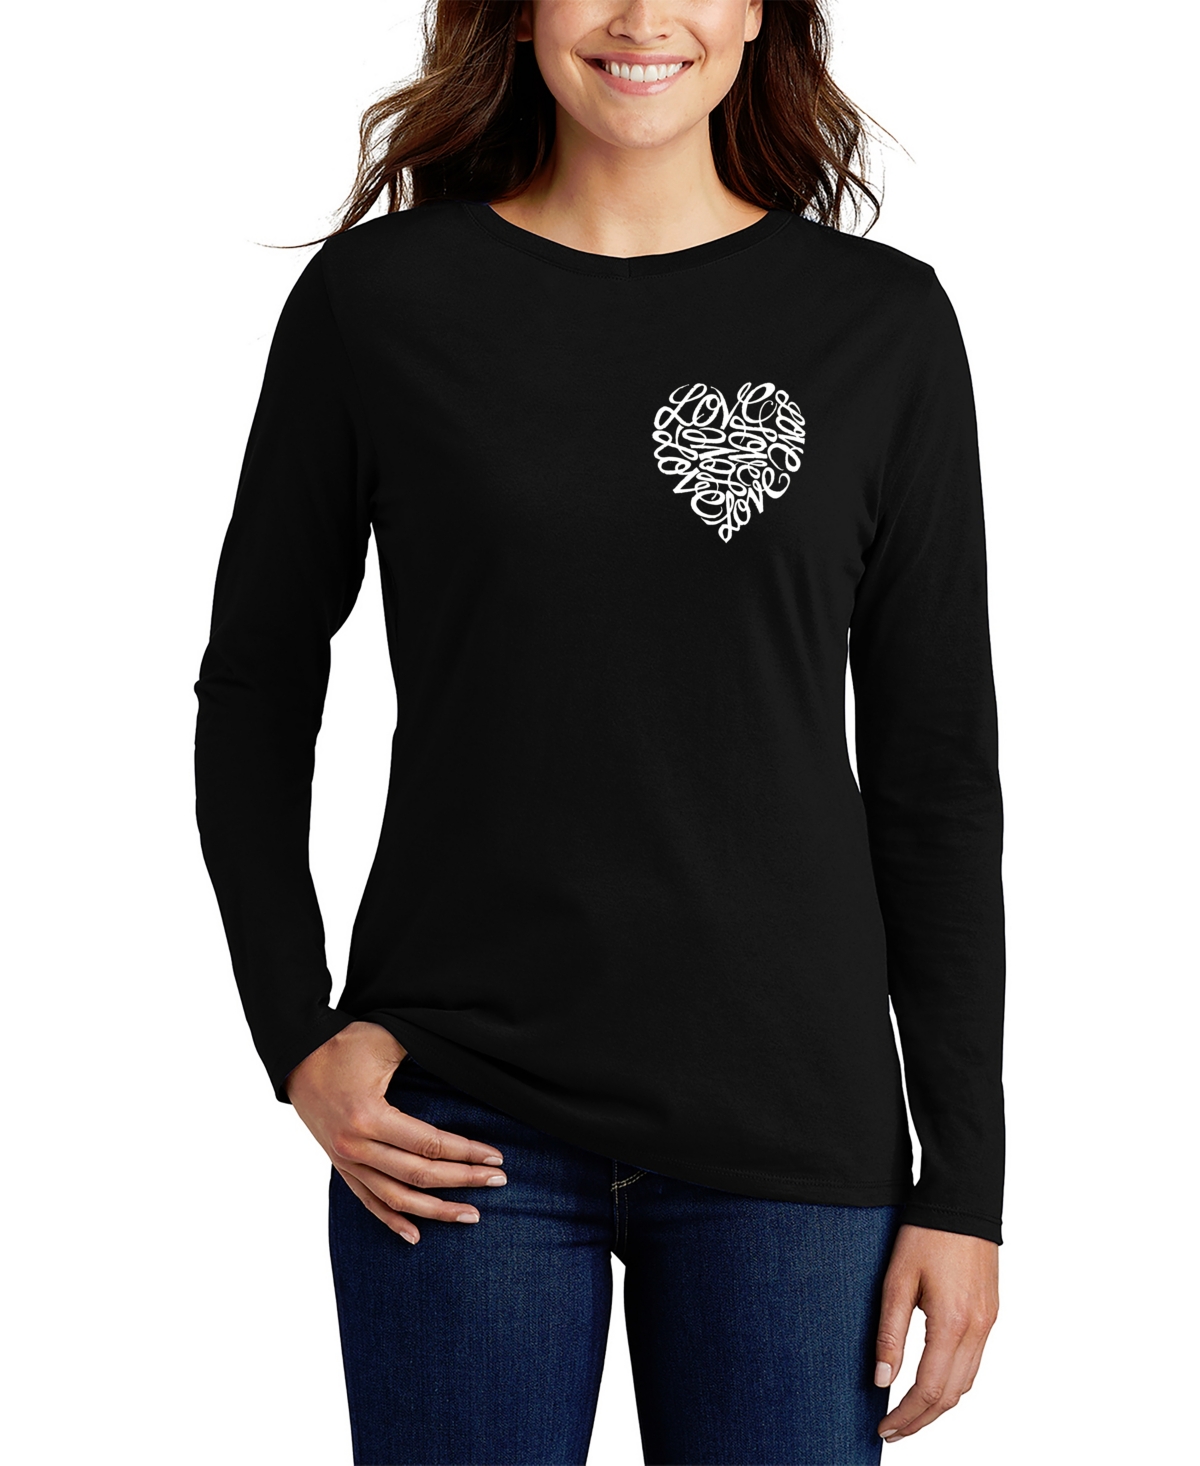 Women's Word Art Cursive Heart Long Sleeve T-Shirt - Black